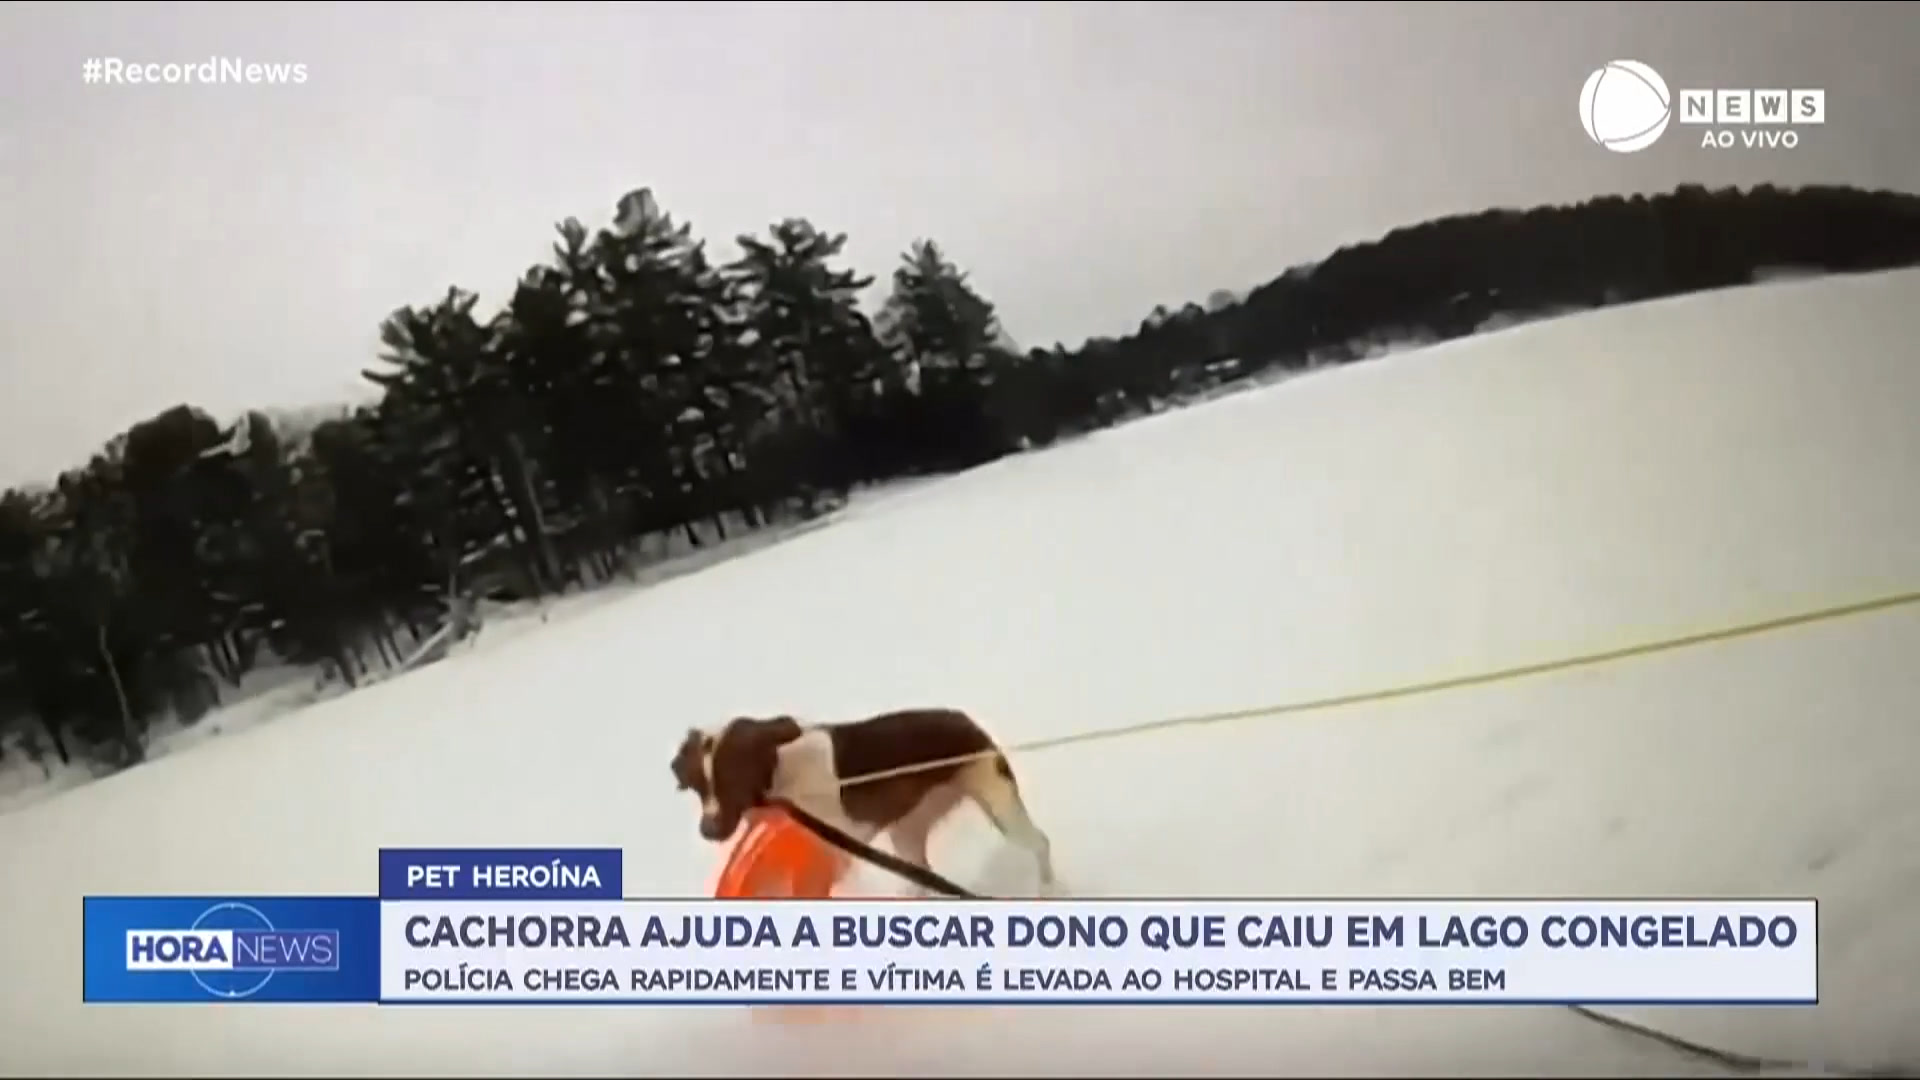 Vídeo: Cachorra ajuda a resgatar dono idoso que caiu em lago congelado nos Estados Unidos